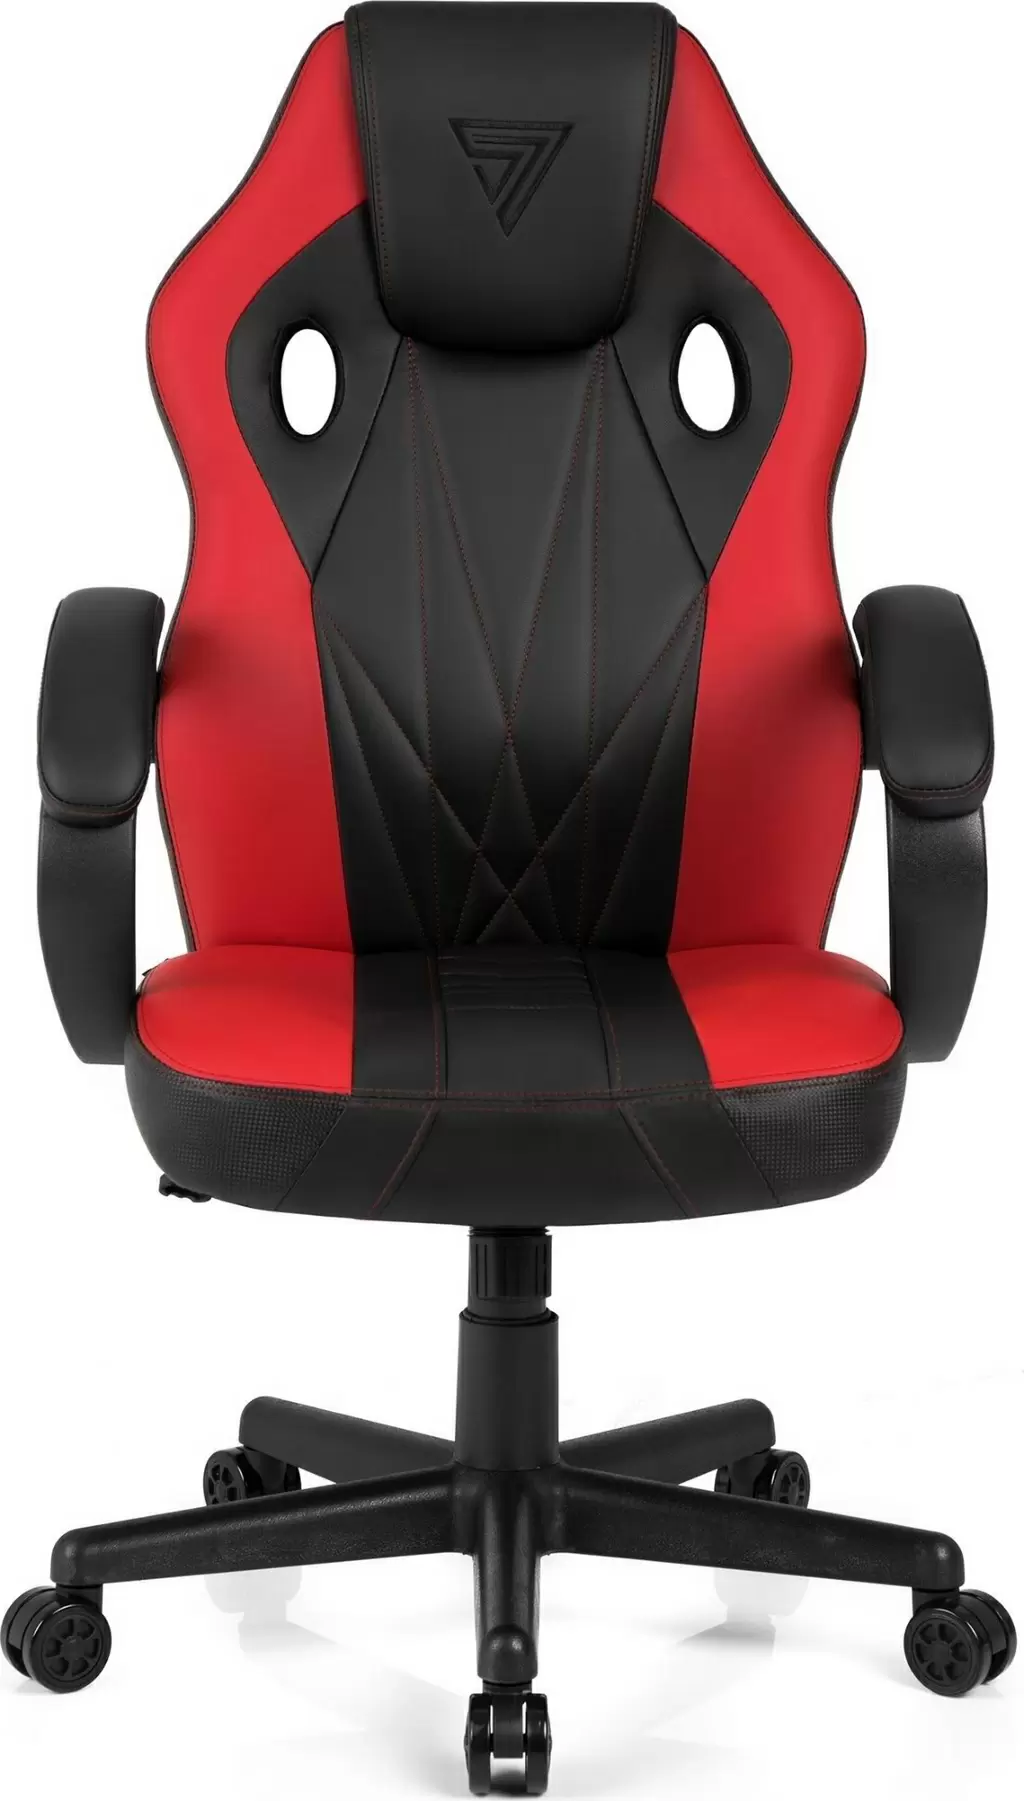 Компьютерное кресло SENSE7 Prism, черный/красный